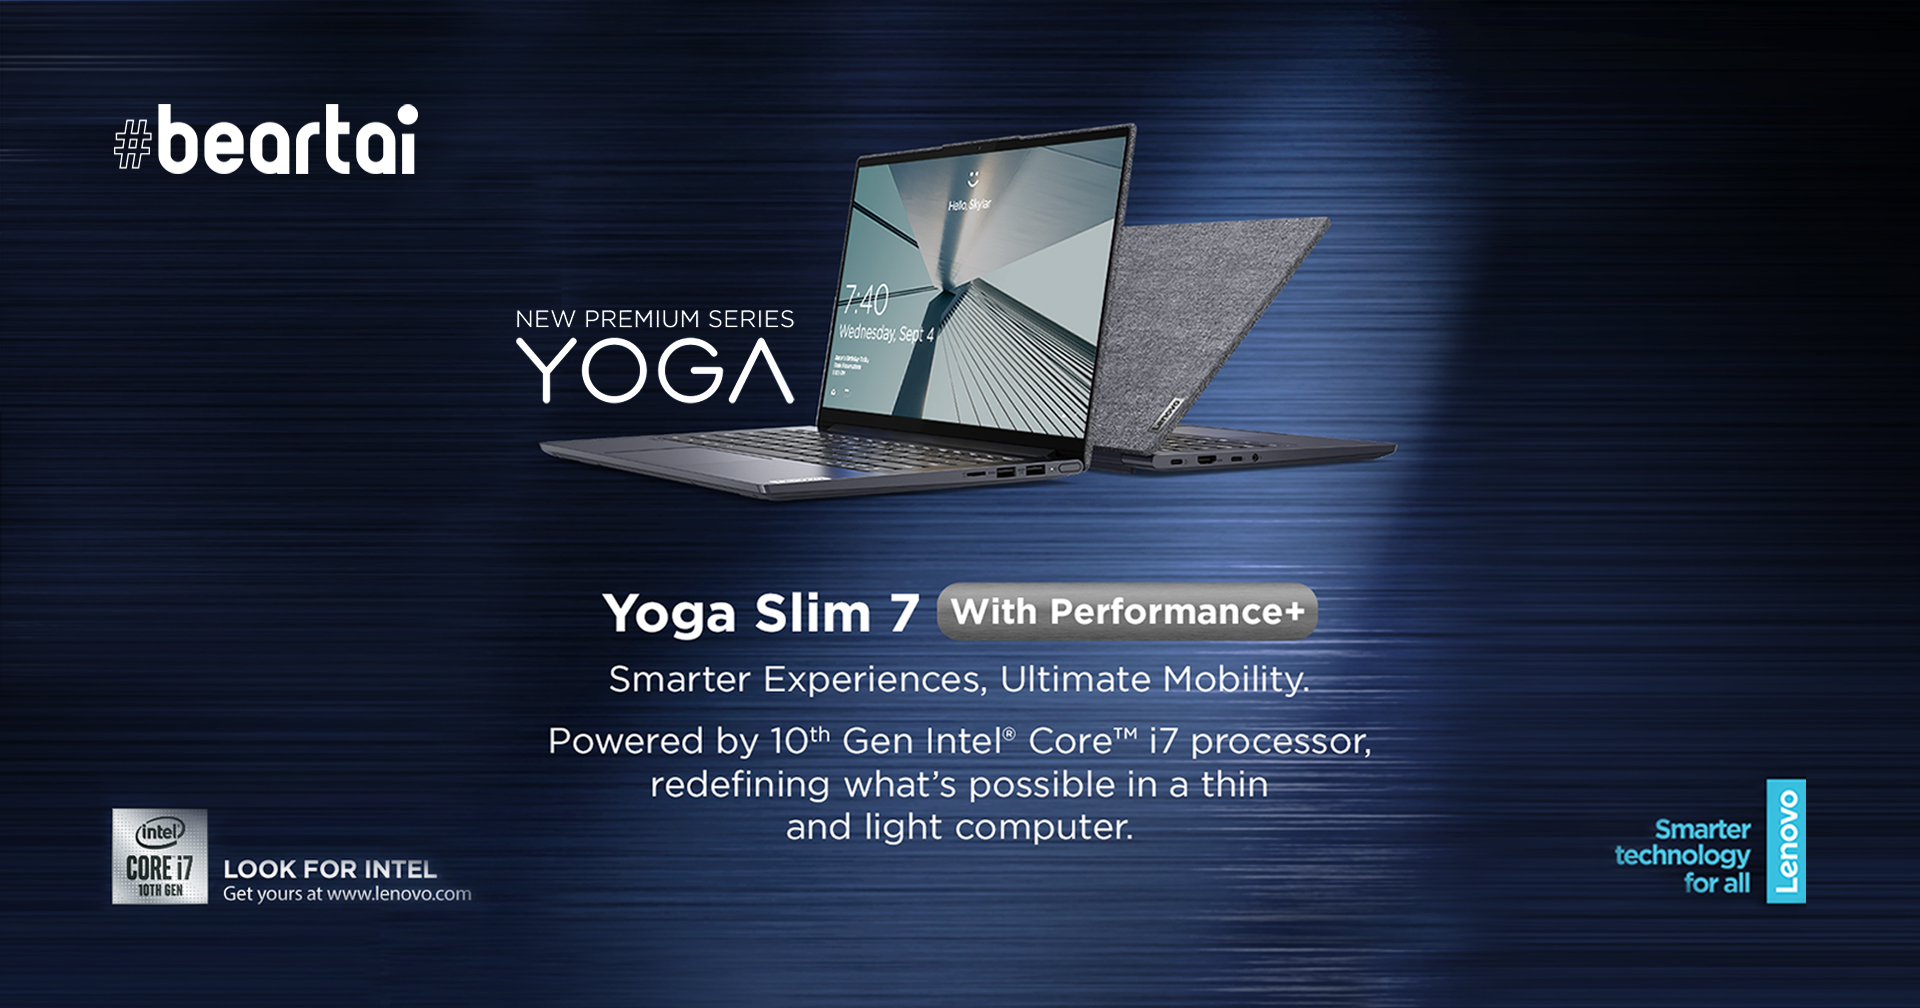 วางจำหน่ายแล้ววันนี้ Yoga Slim 7 พร้อมดีไซน์สุดล้ำ บนหน้าจอ 4K จัดเต็ม!